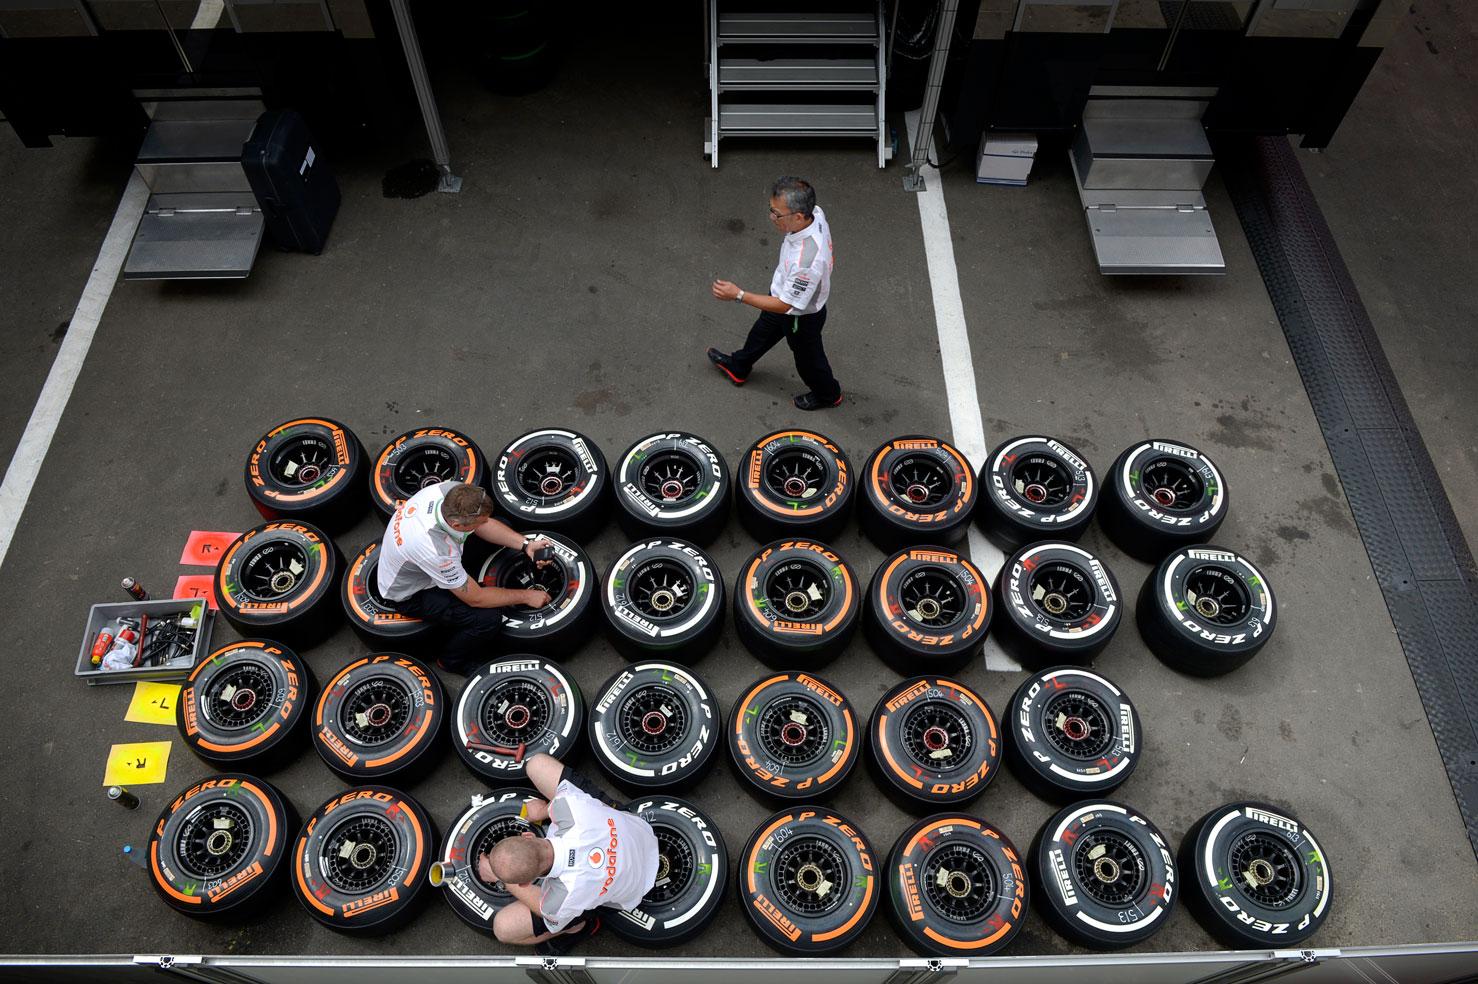 Pirelli som står för däcken i Formel 1 har varit i centrum i årets mästerskap.